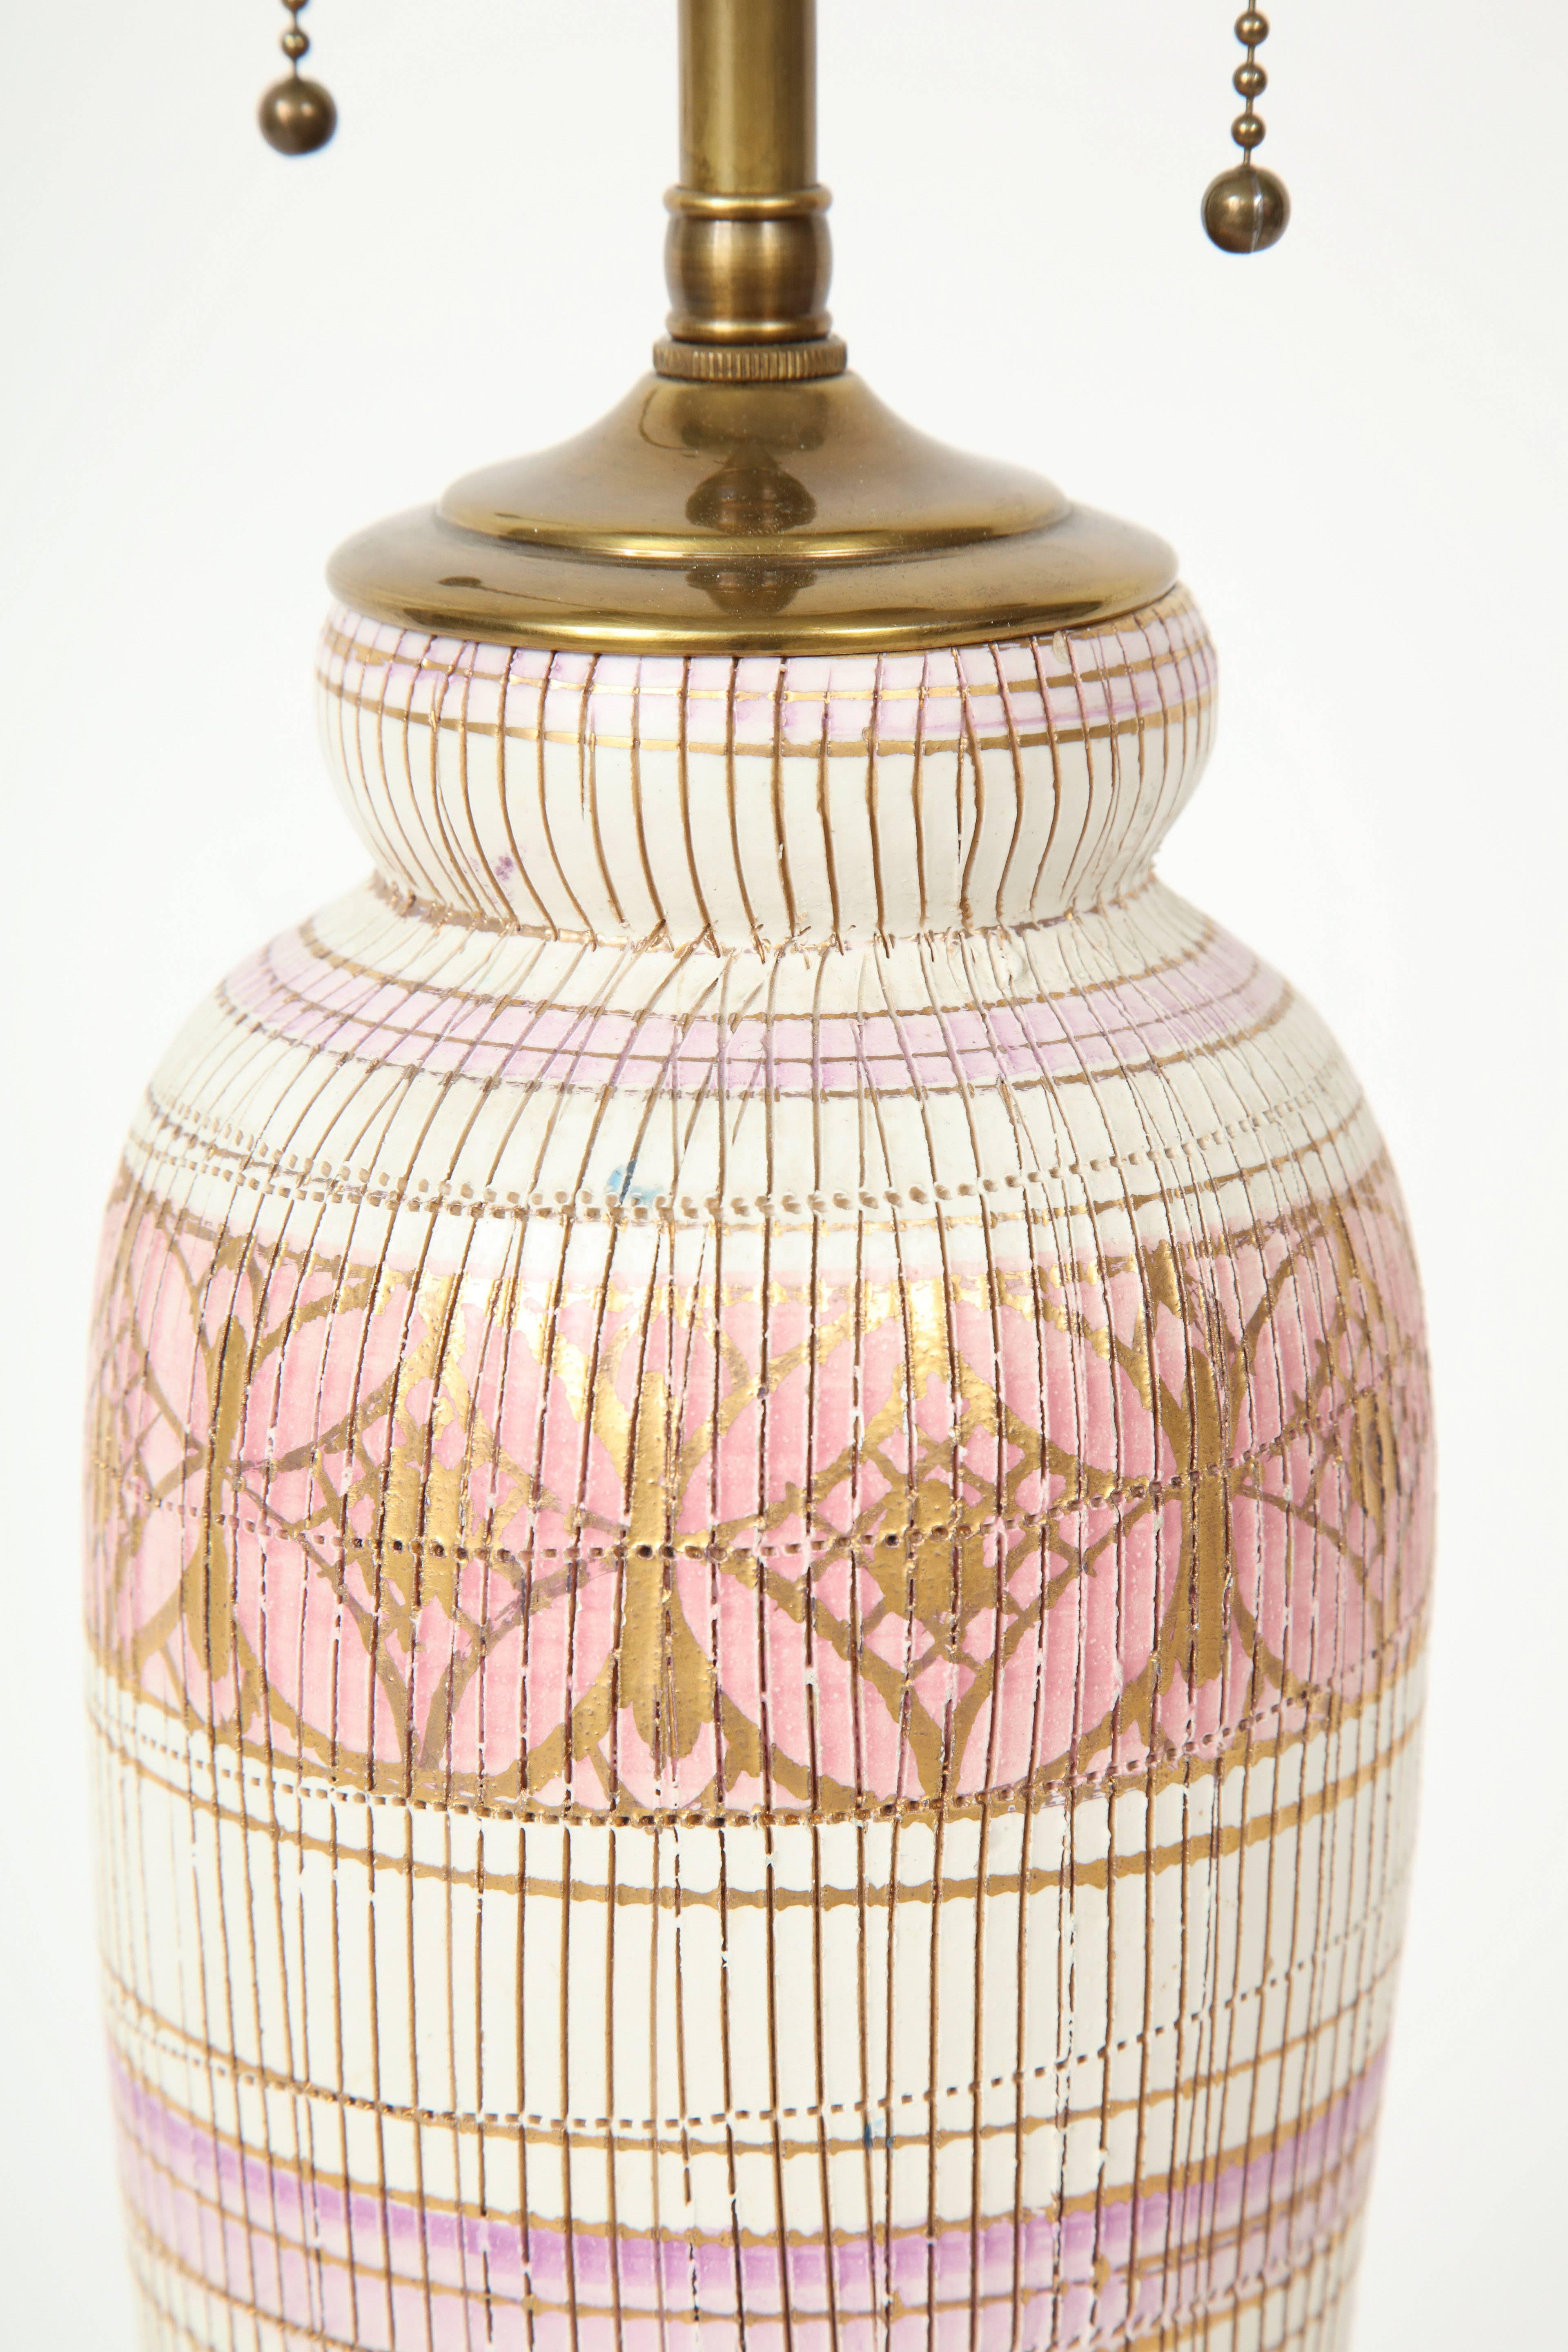 Aldo Londi/Bitossi Ceramic Lamps In Excellent Condition In New York, NY